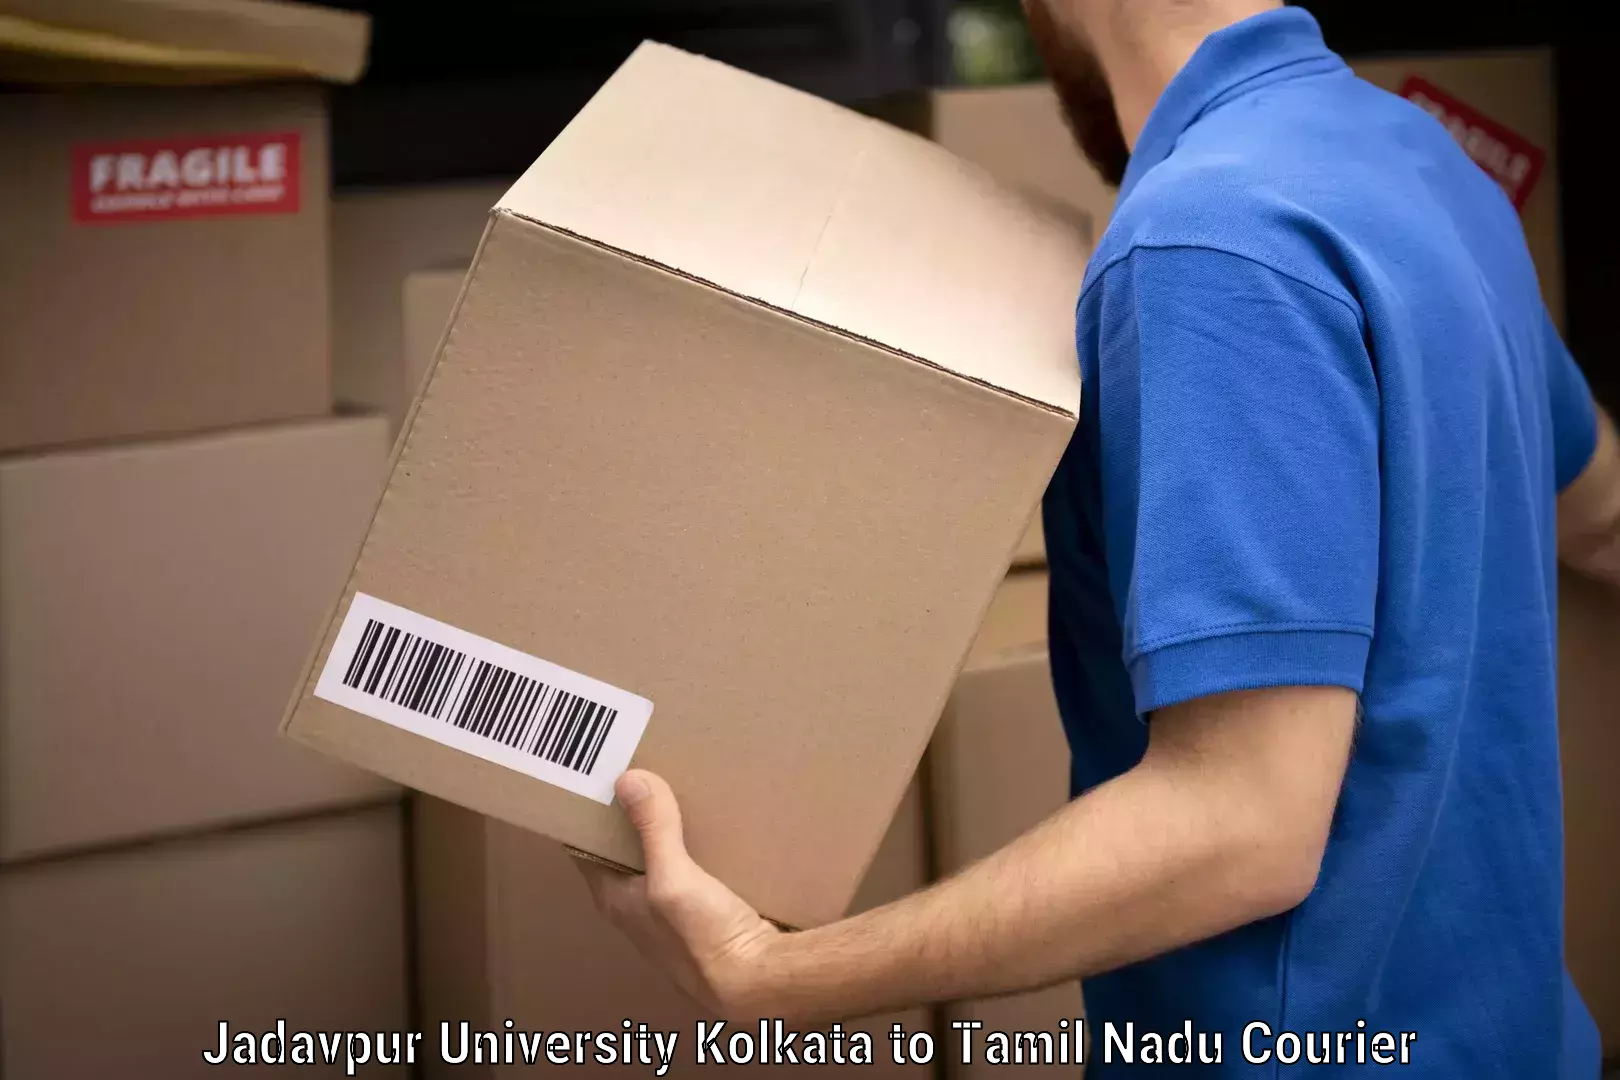 Efficient furniture movers Jadavpur University Kolkata to Tamil Nadu